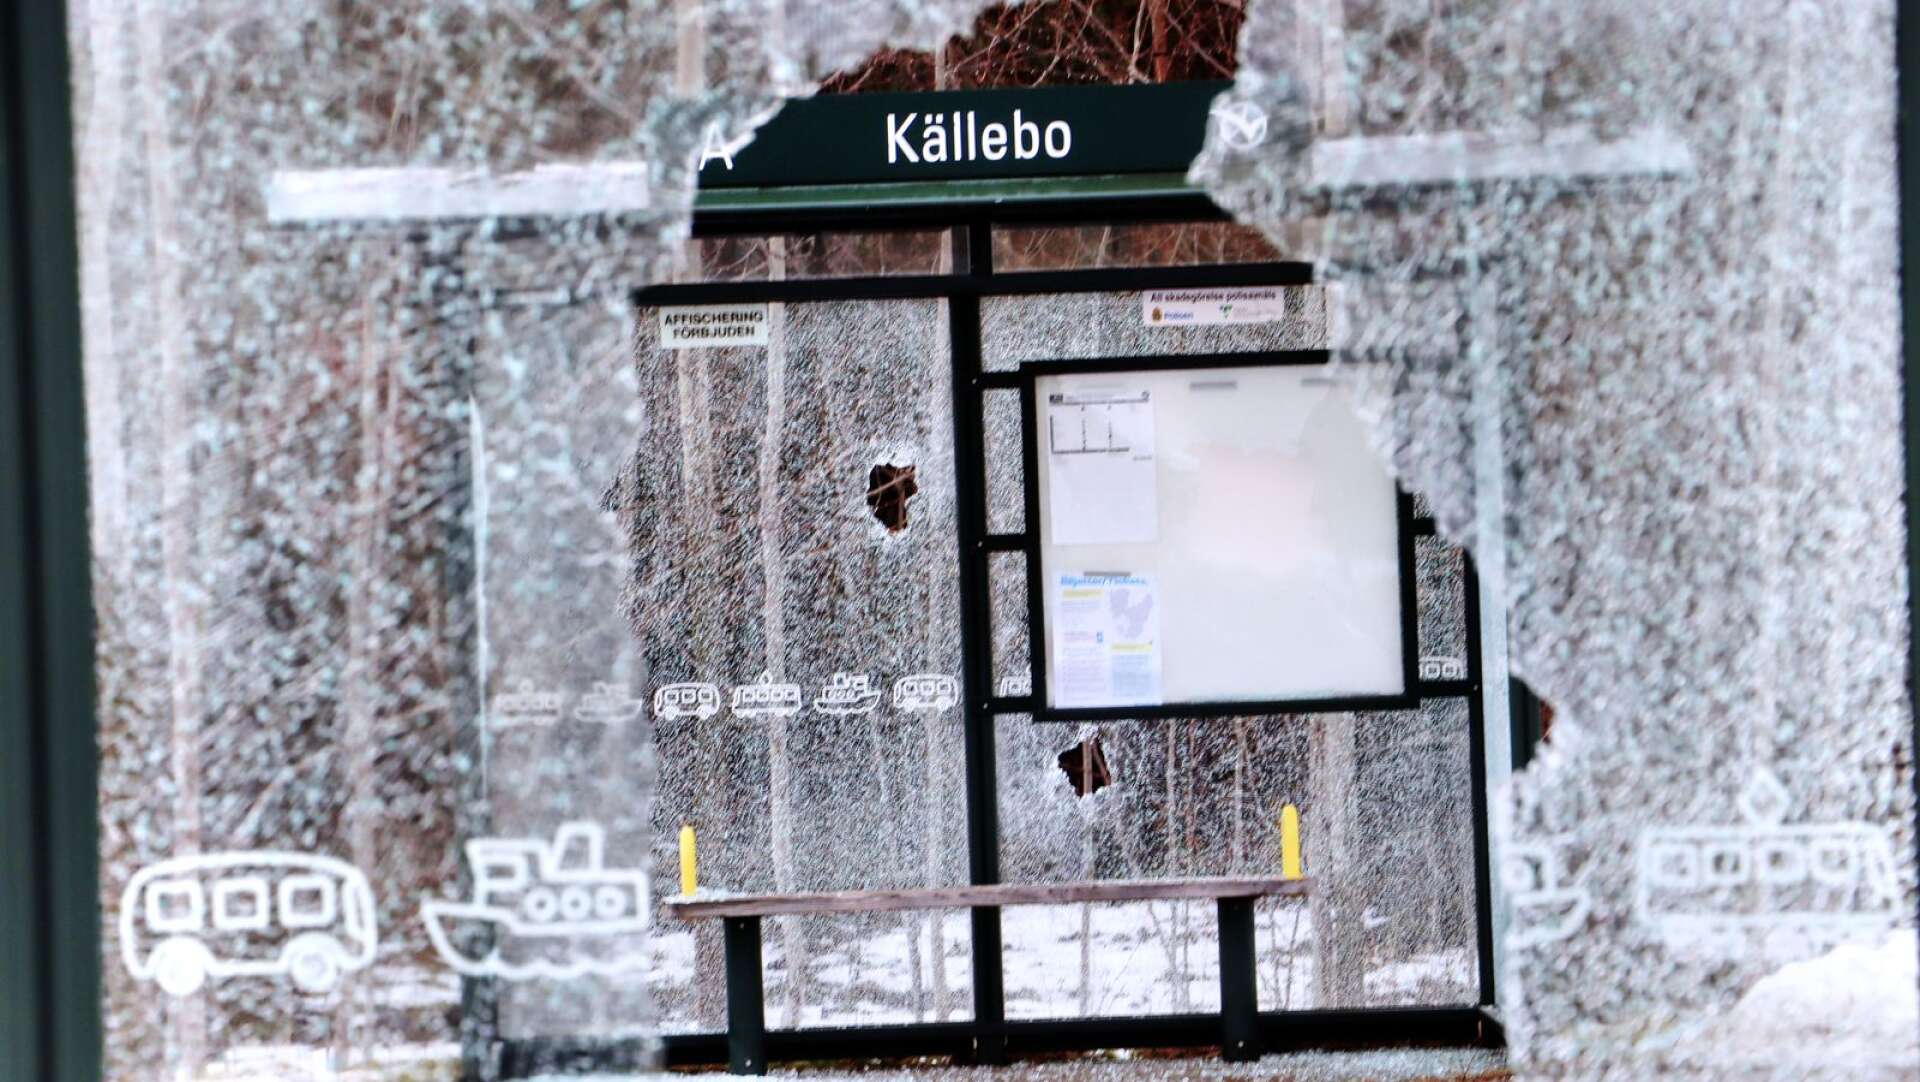 Båda busskurerna i Källebo är vandaliserade.